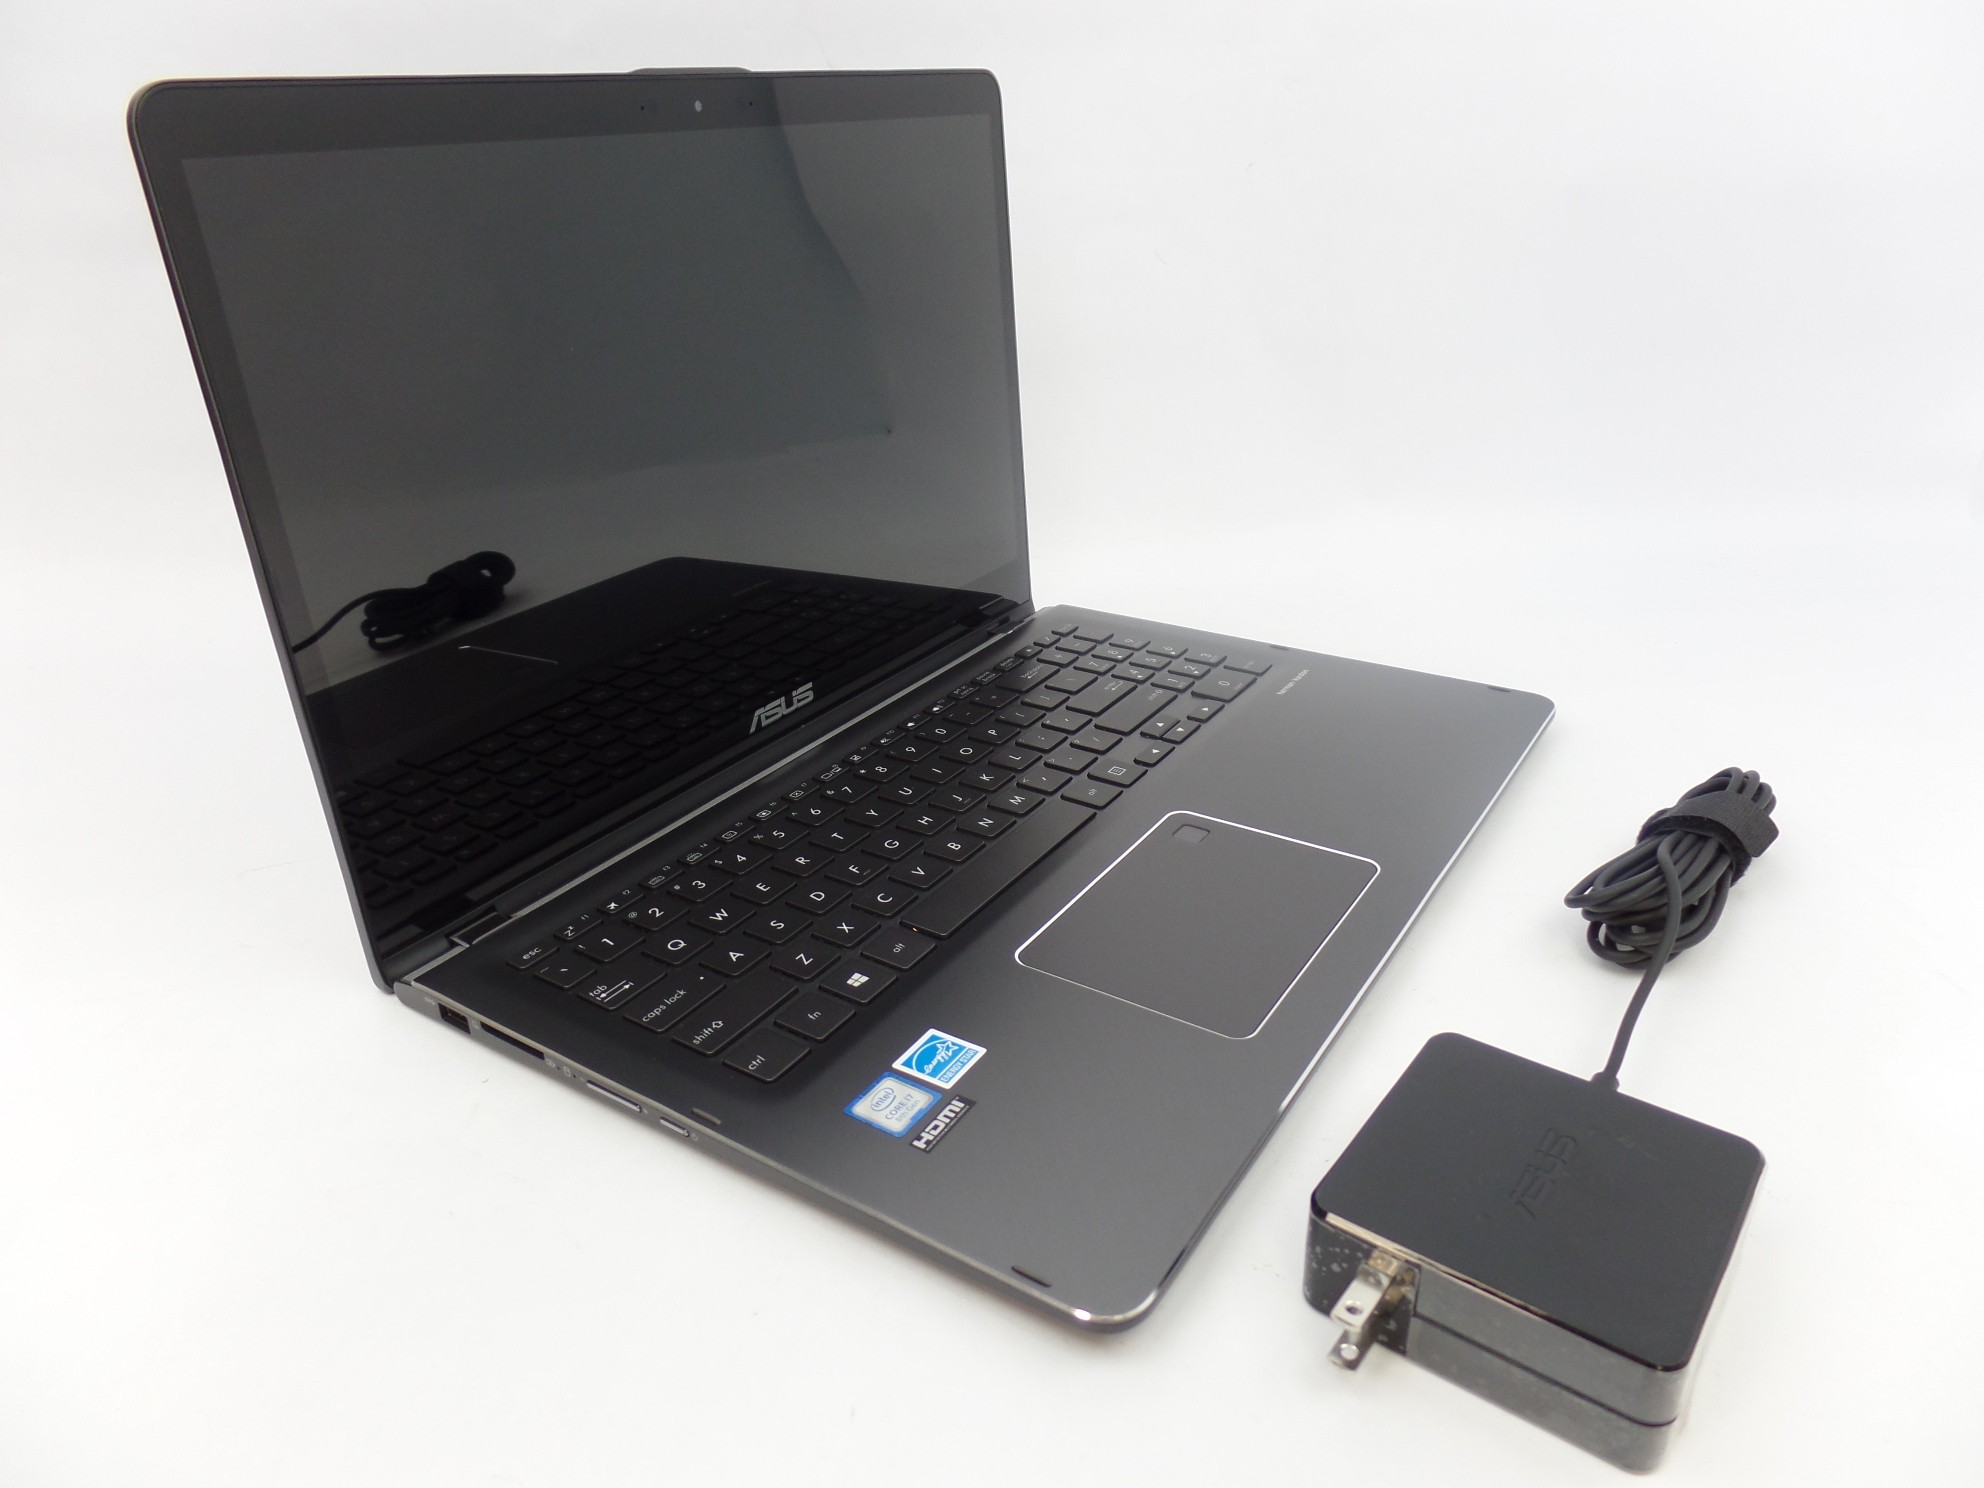 ASUS Q525UA-BI7T11 15.6" FHD Touch i7-8550U 1.8GHz 16GB 2TB W10H 2in1 Laptop SD